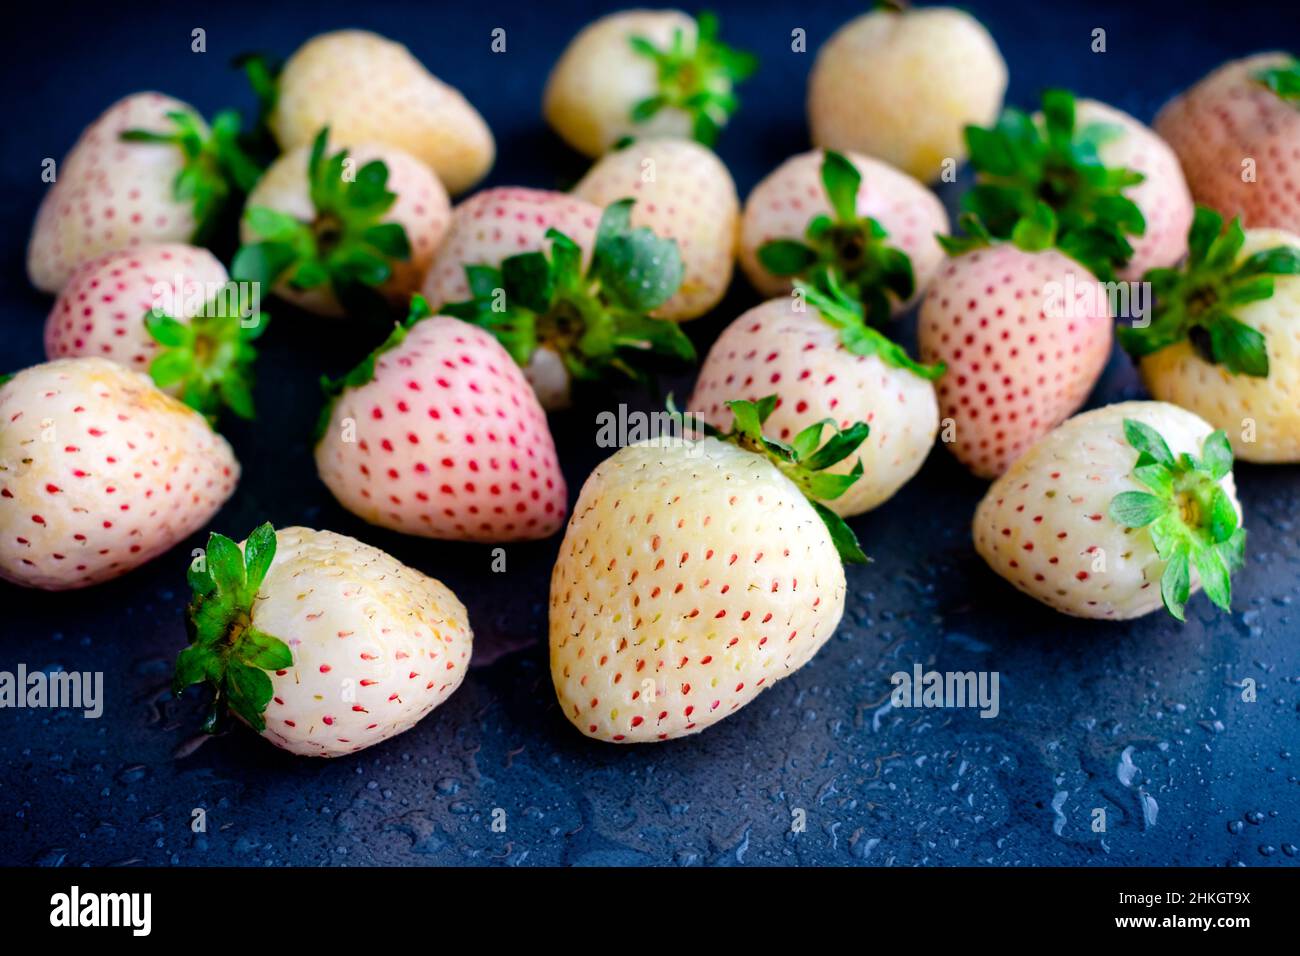 Frisch gewaschene weiße Pineberries auf dunklem Hintergrund: Nahaufnahme von weißen Erdbeeren, die mit Wasser besprüht wurden Stockfoto